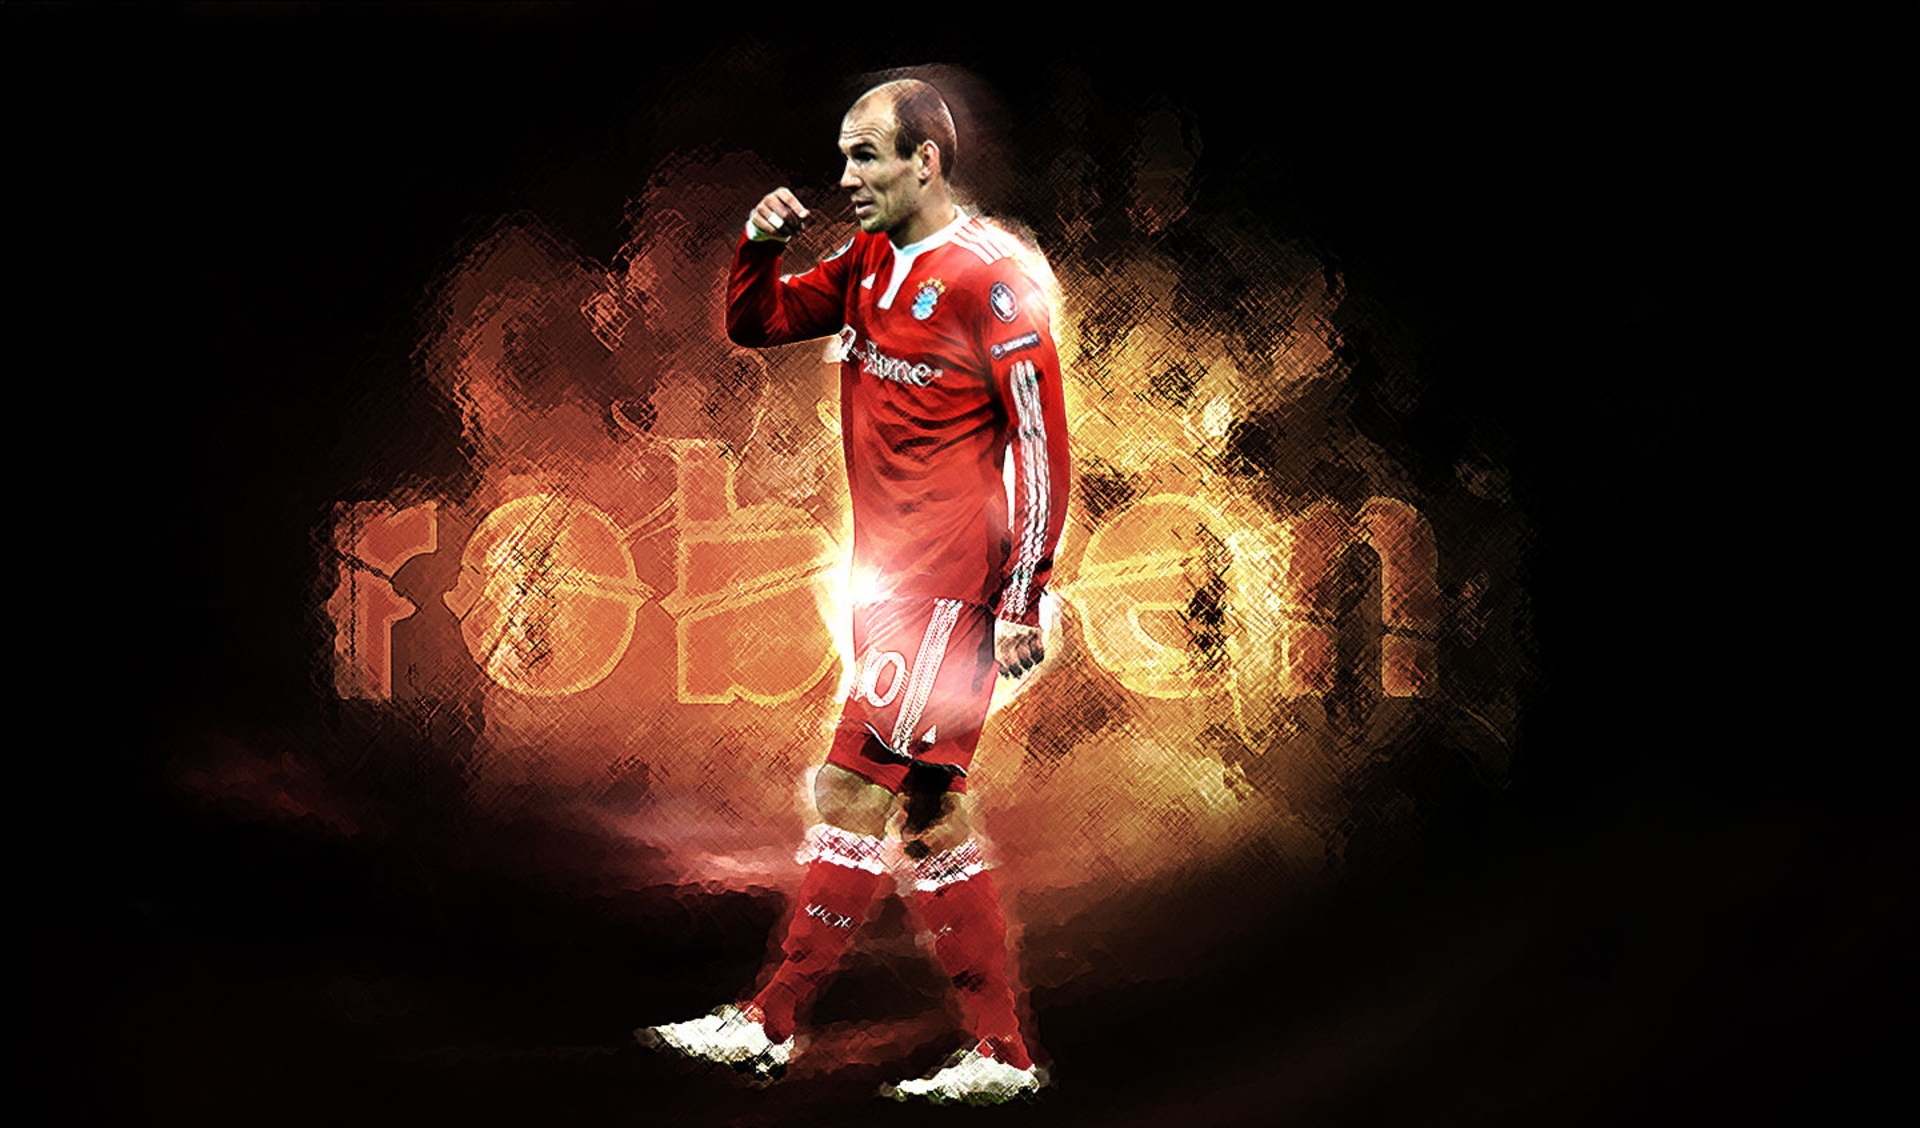 Sports Arjen Robben HD Wallpaper | Background Image